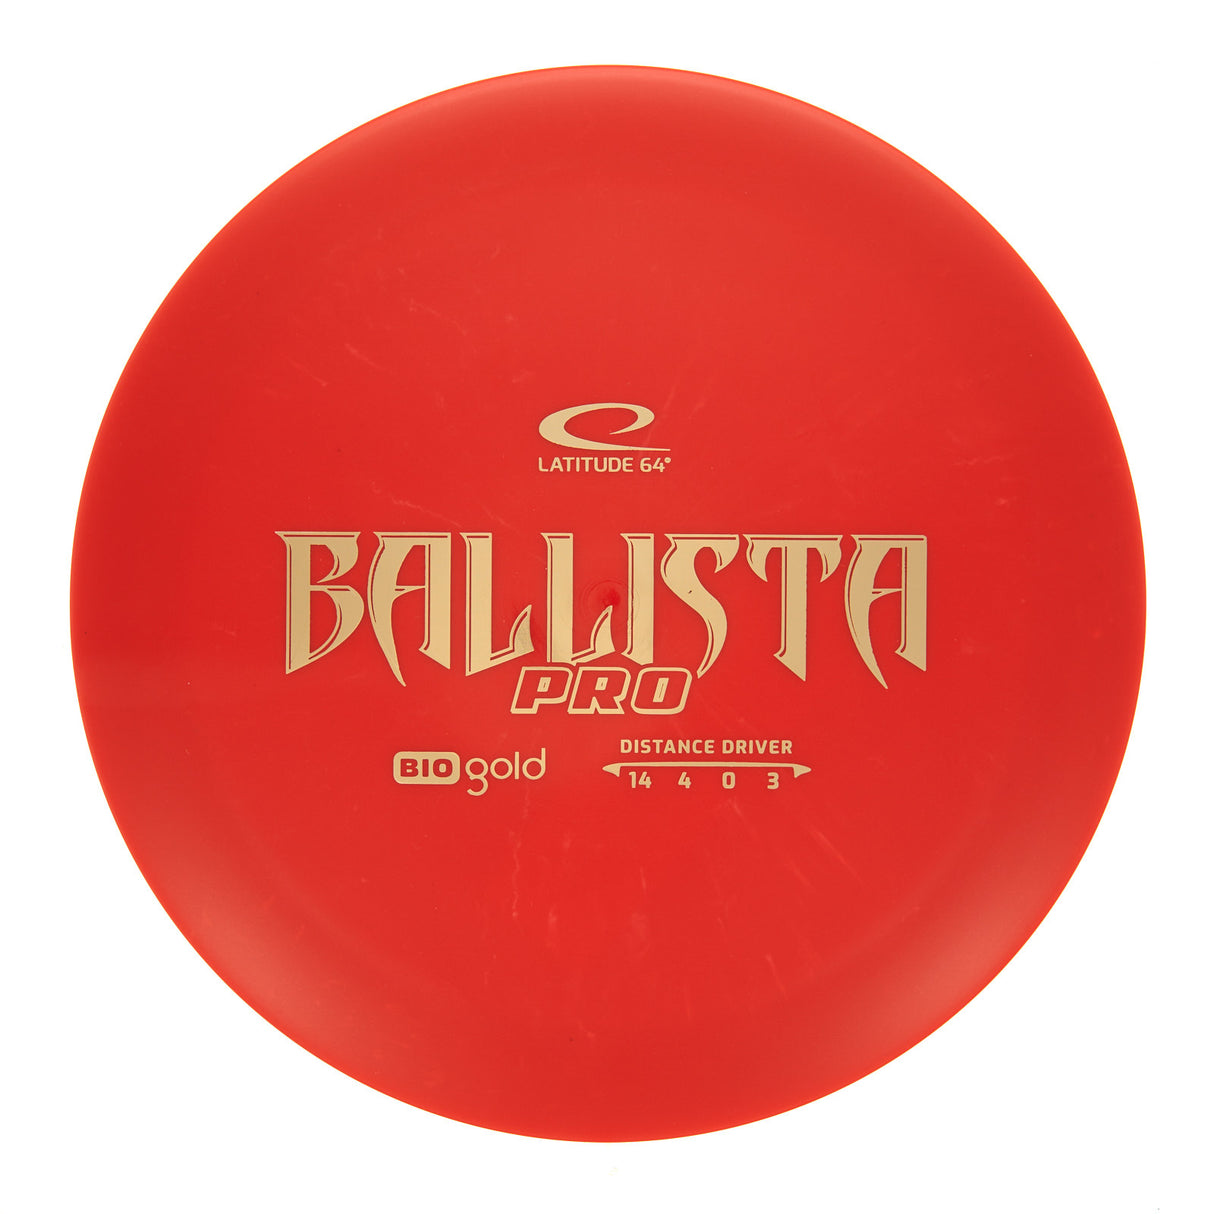 Latitude 64 Ballista Pro - Bio Gold 171g | Style 0006